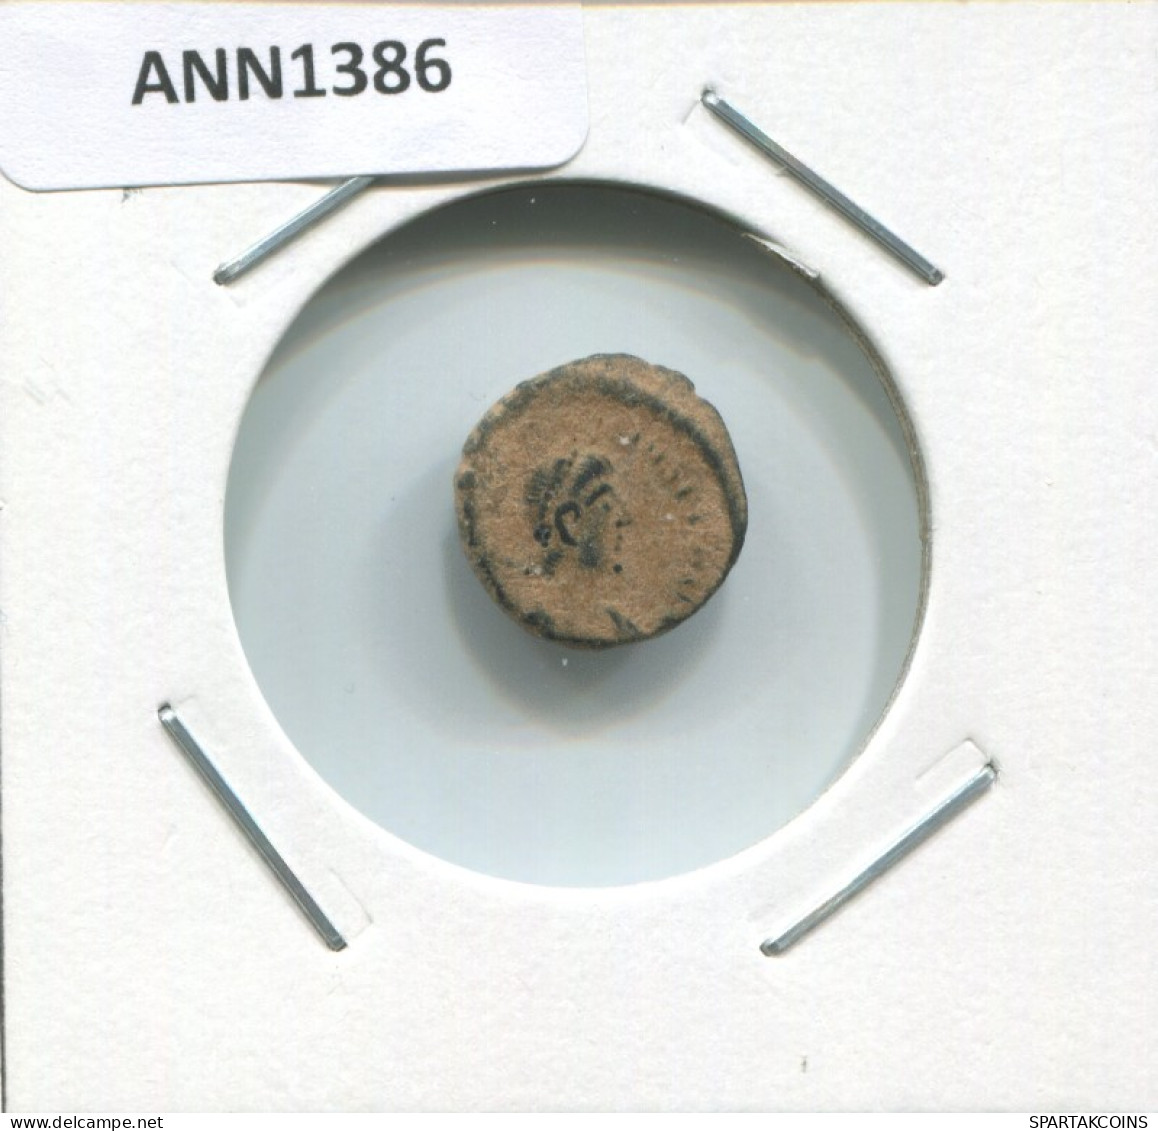 VALENTINIAN II ANTIOCH ANA AD375-392 SALVS REI-PVBLICAE 1.1g/12mm #ANN1386.9.D.A - Der Spätrömanischen Reich (363 / 476)